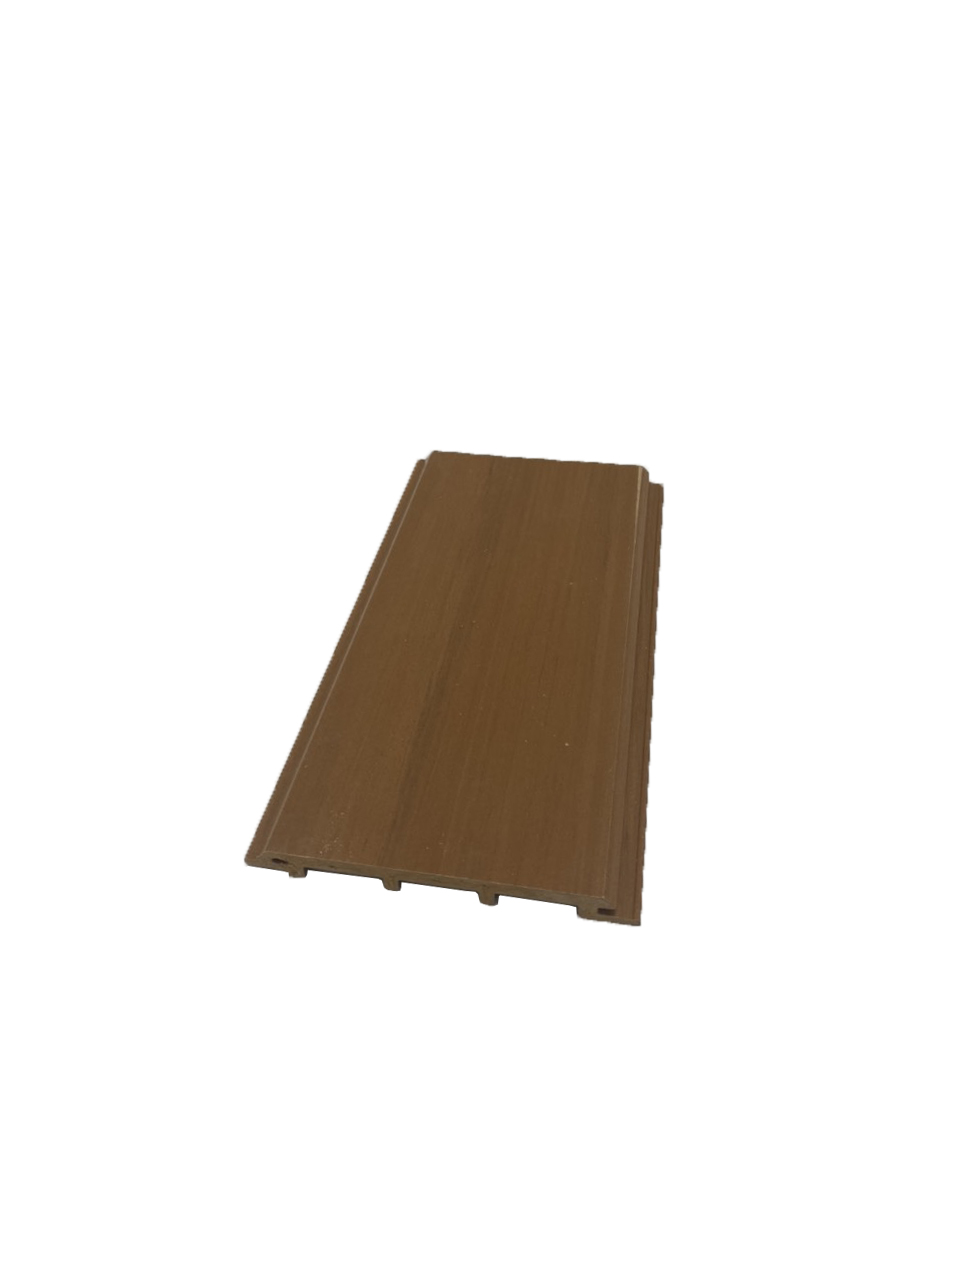 Tấm nhựa ốp tường giả gỗ ngoài trời giá rẻ tại Bình Dương MS04 có vân 3D (loại 2)